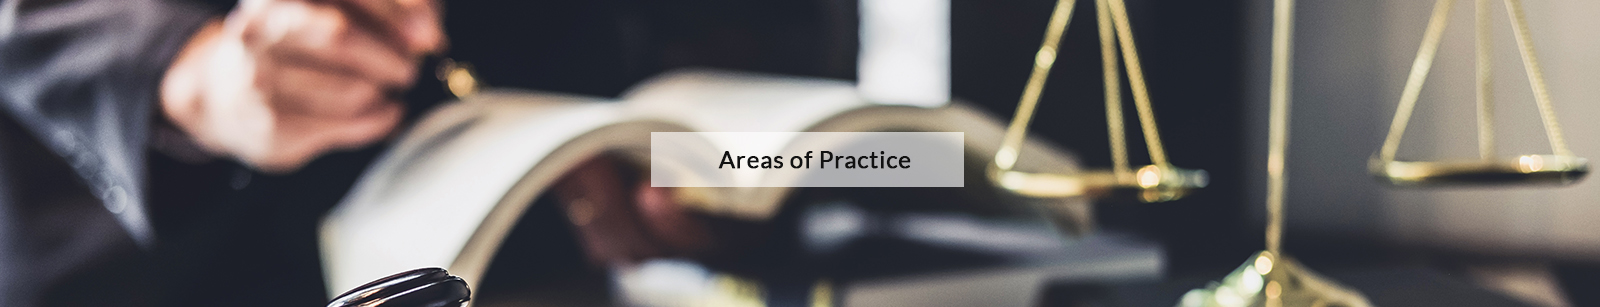 Trusiak Law - areas of practice - HERO Act